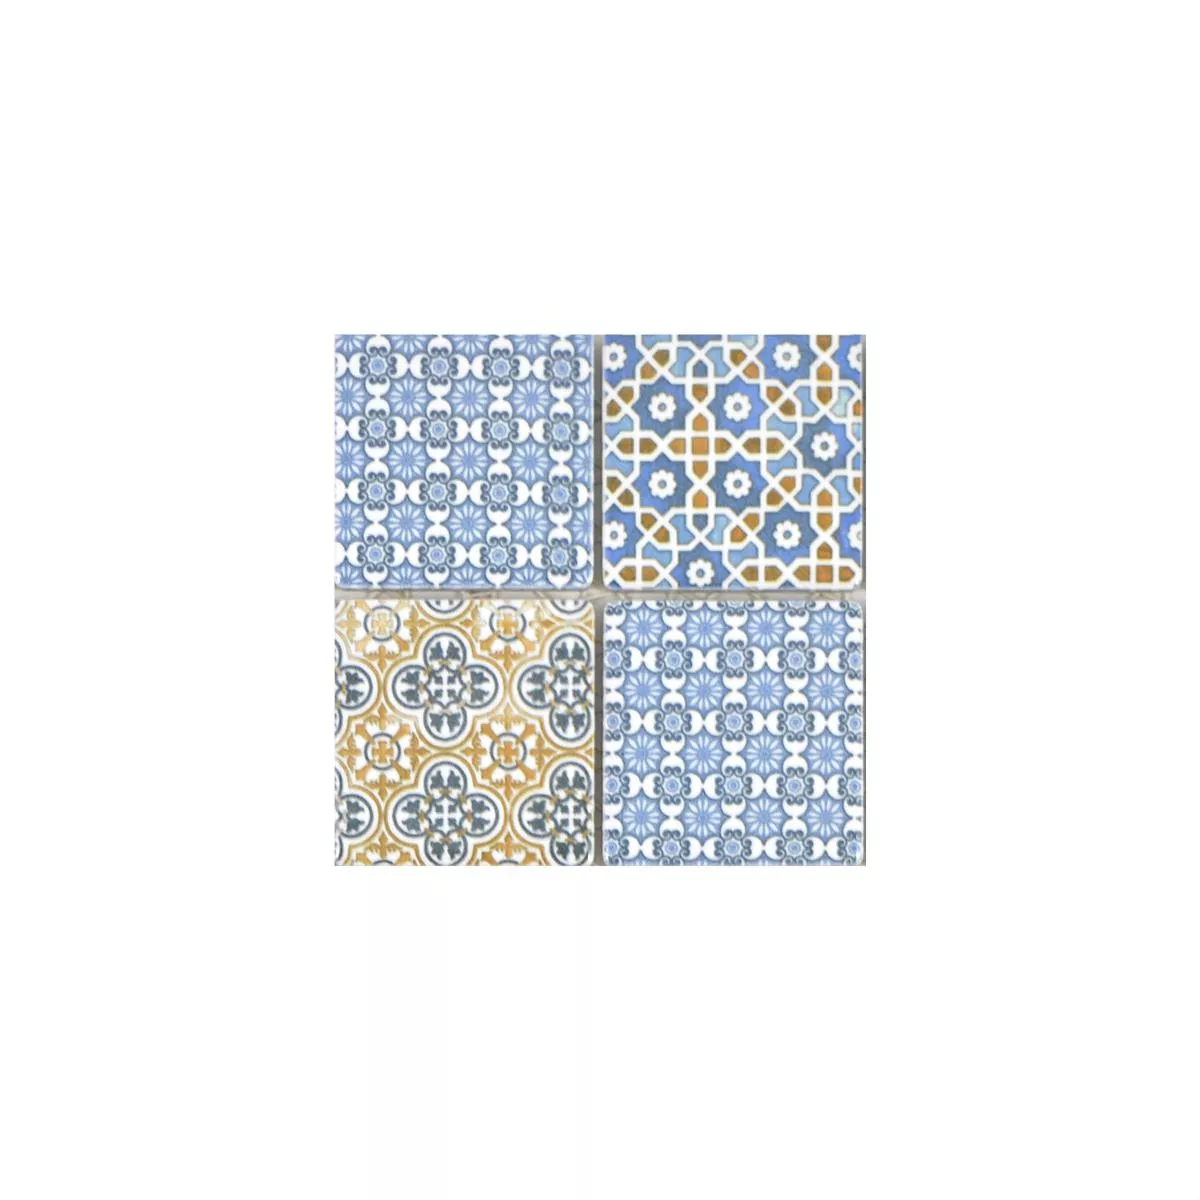 Muestra Cerámica Azulejos De Mosaico Daymion Aspecto Retro  Azul Marrón